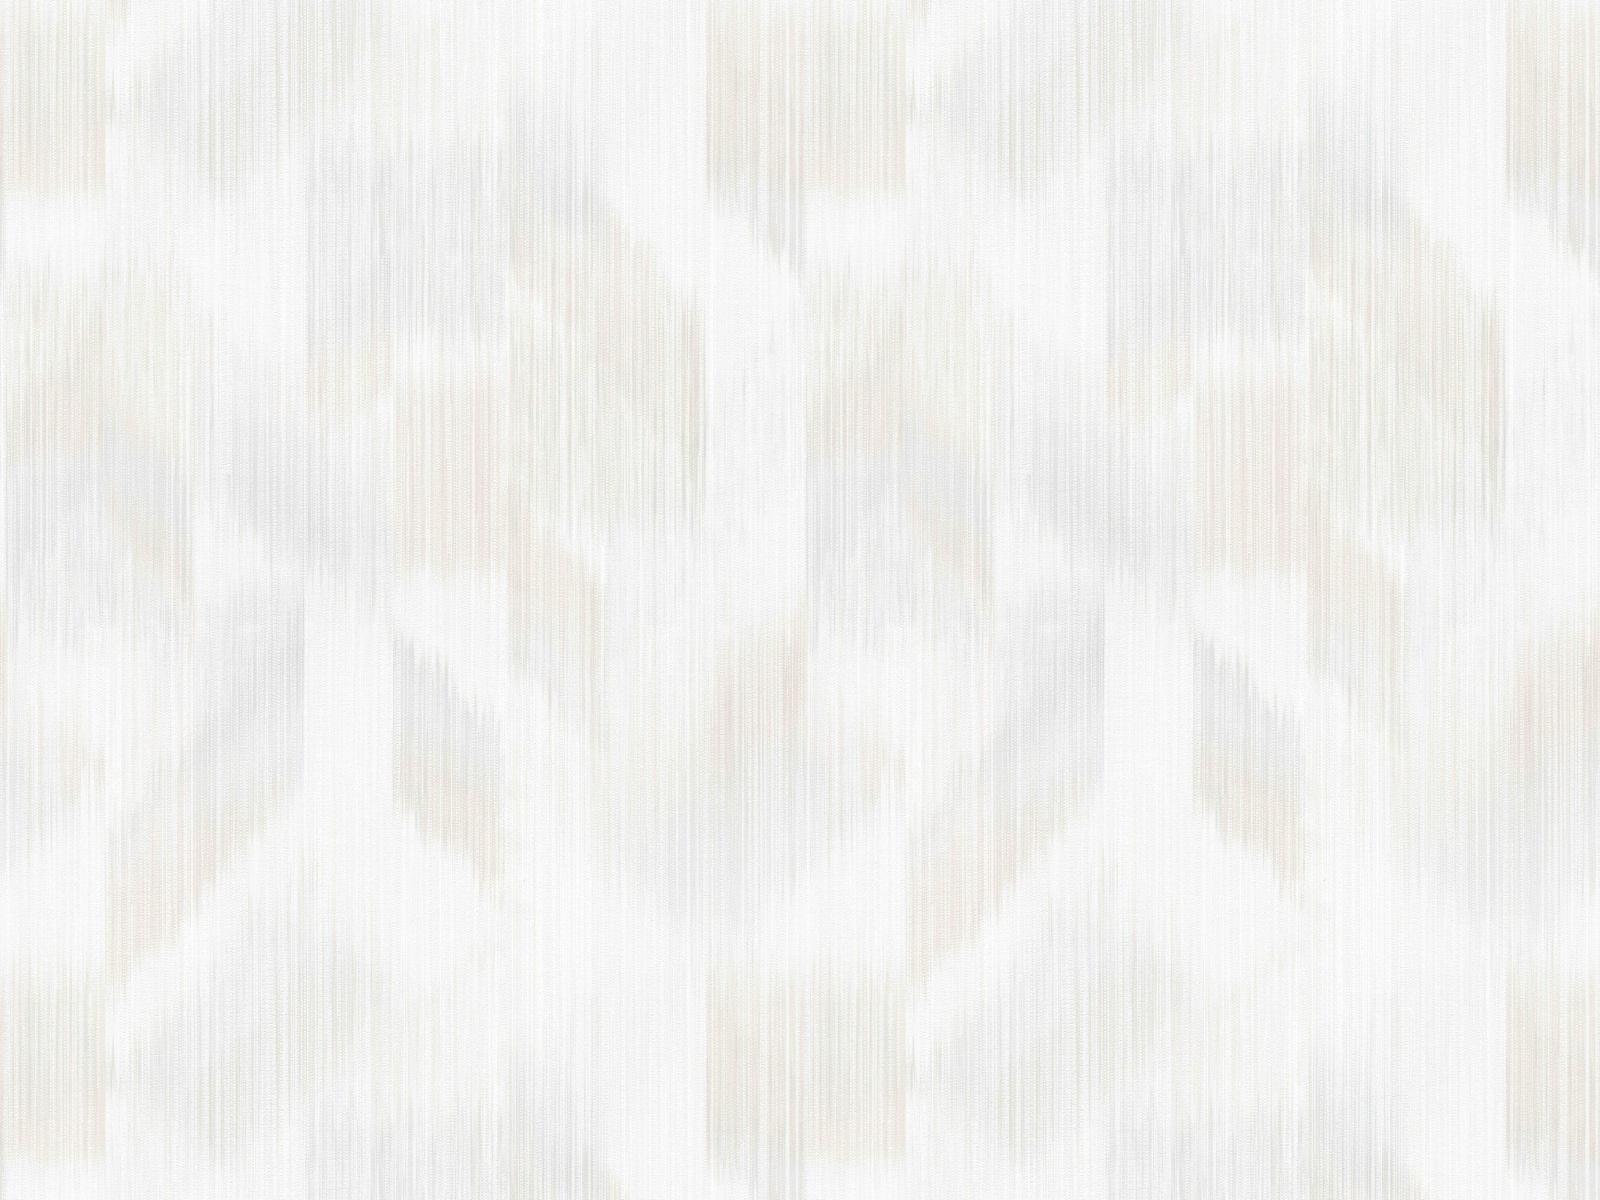 Vliesová tapeta s relaxačným vzorom tón v tóne v svetlo-šedých farbách, ER-601587